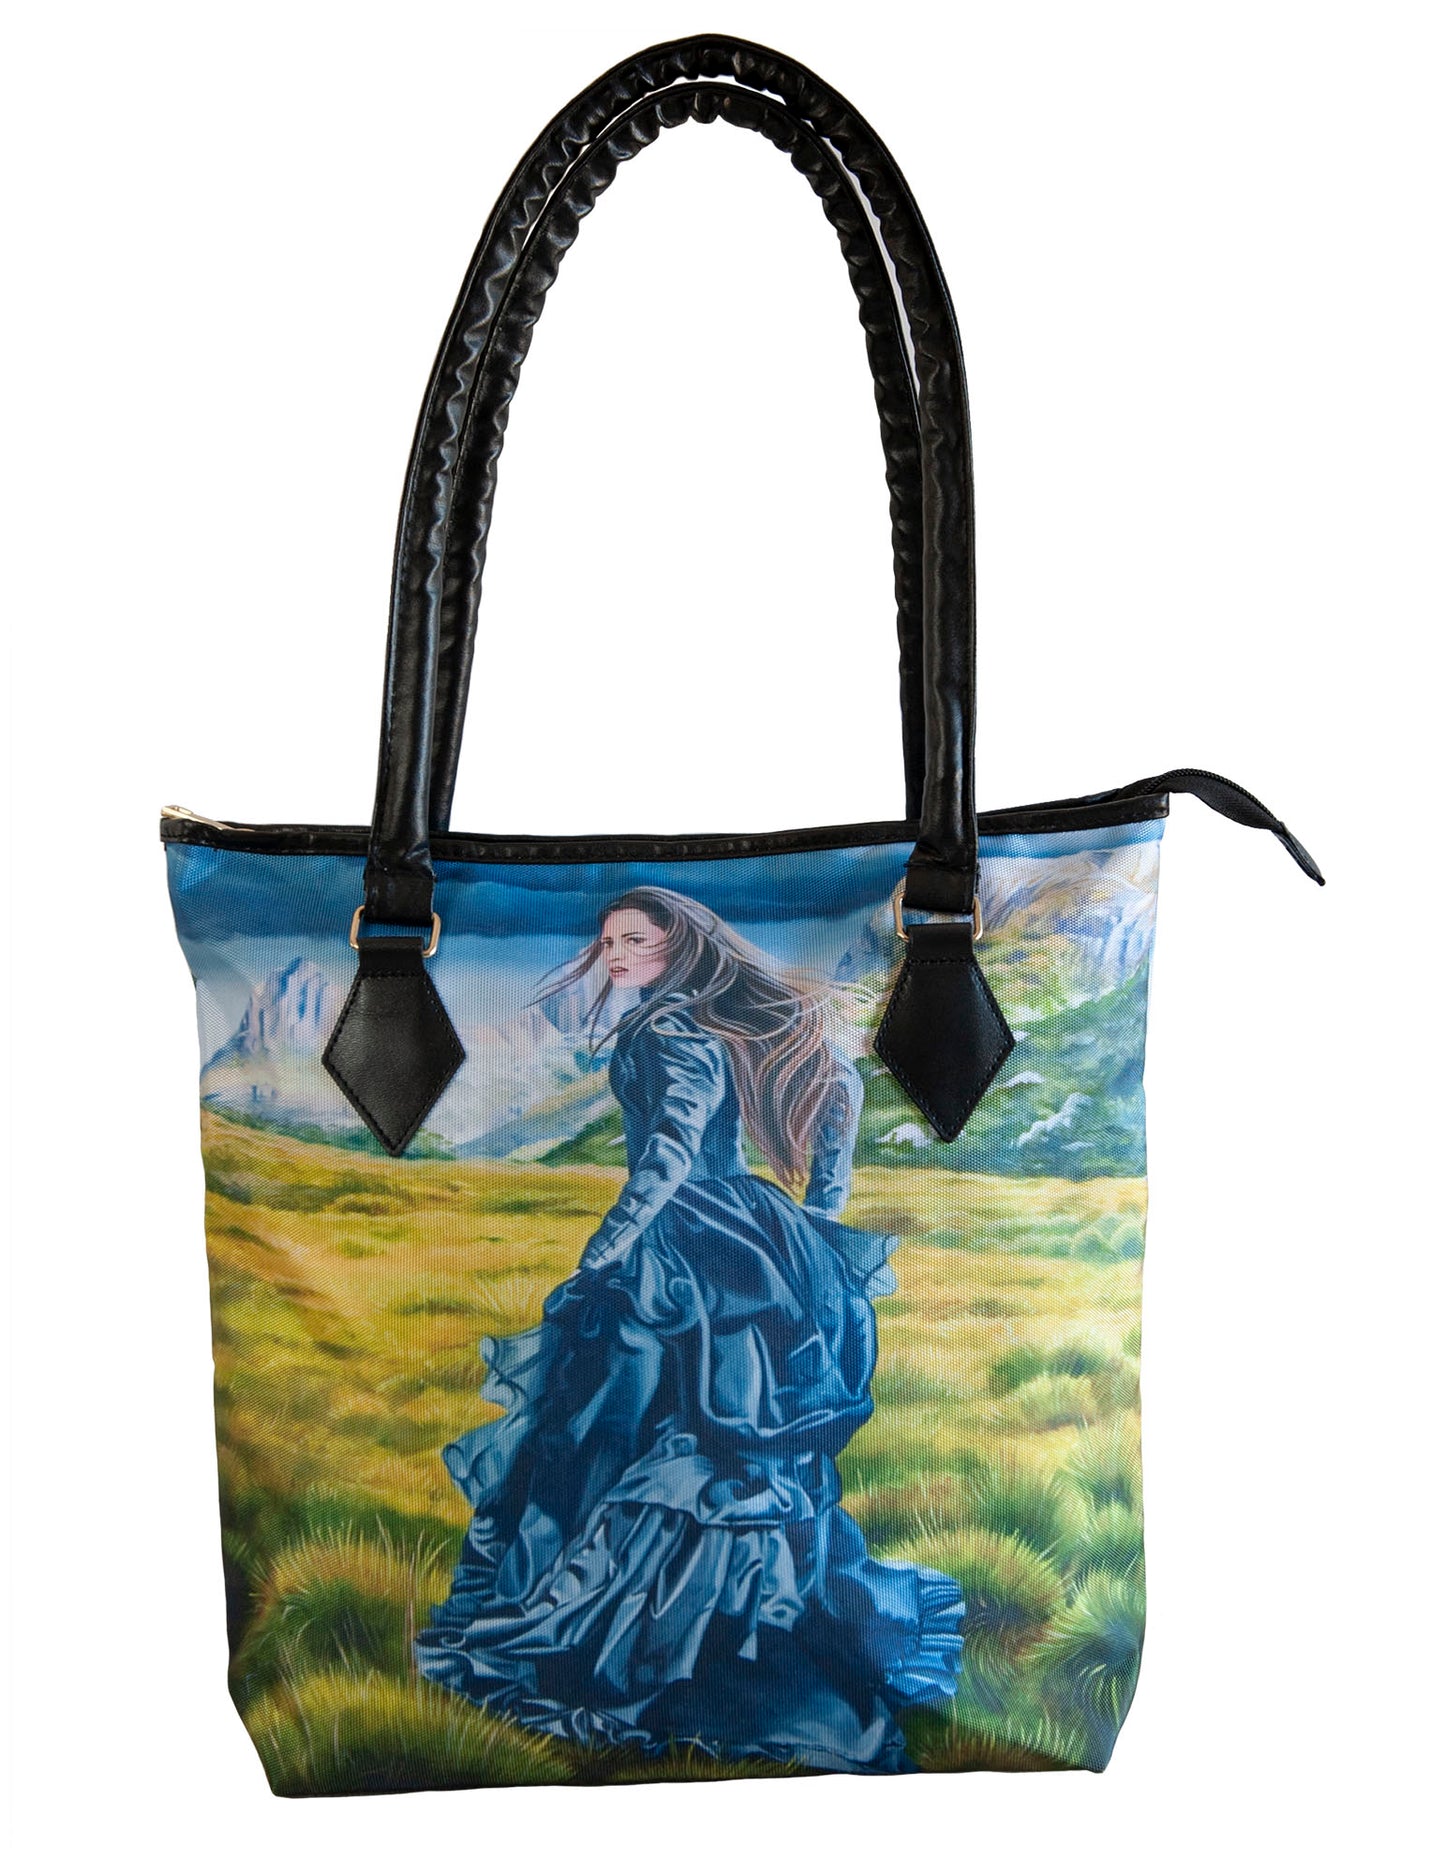 Handbag featuring 'Wilderness of the Heart' artwork